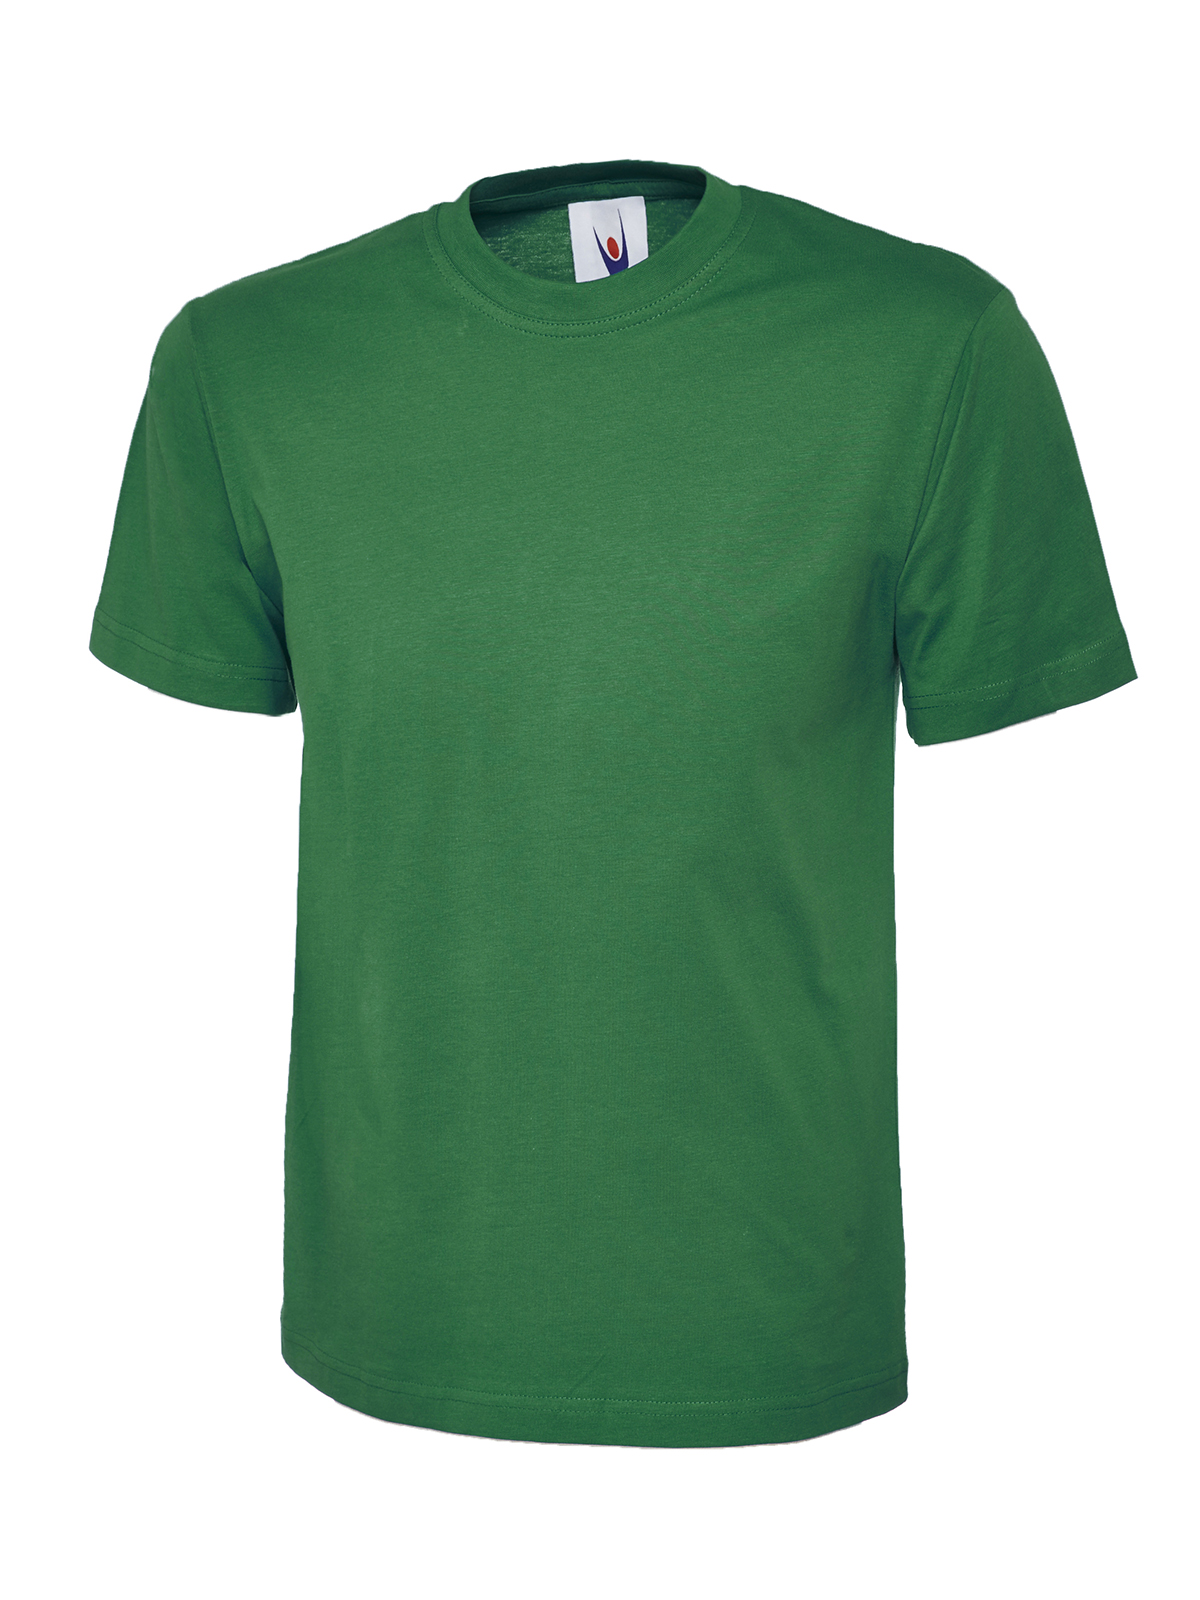 Uneek Herren T-Shirt Classic dunkelgrün